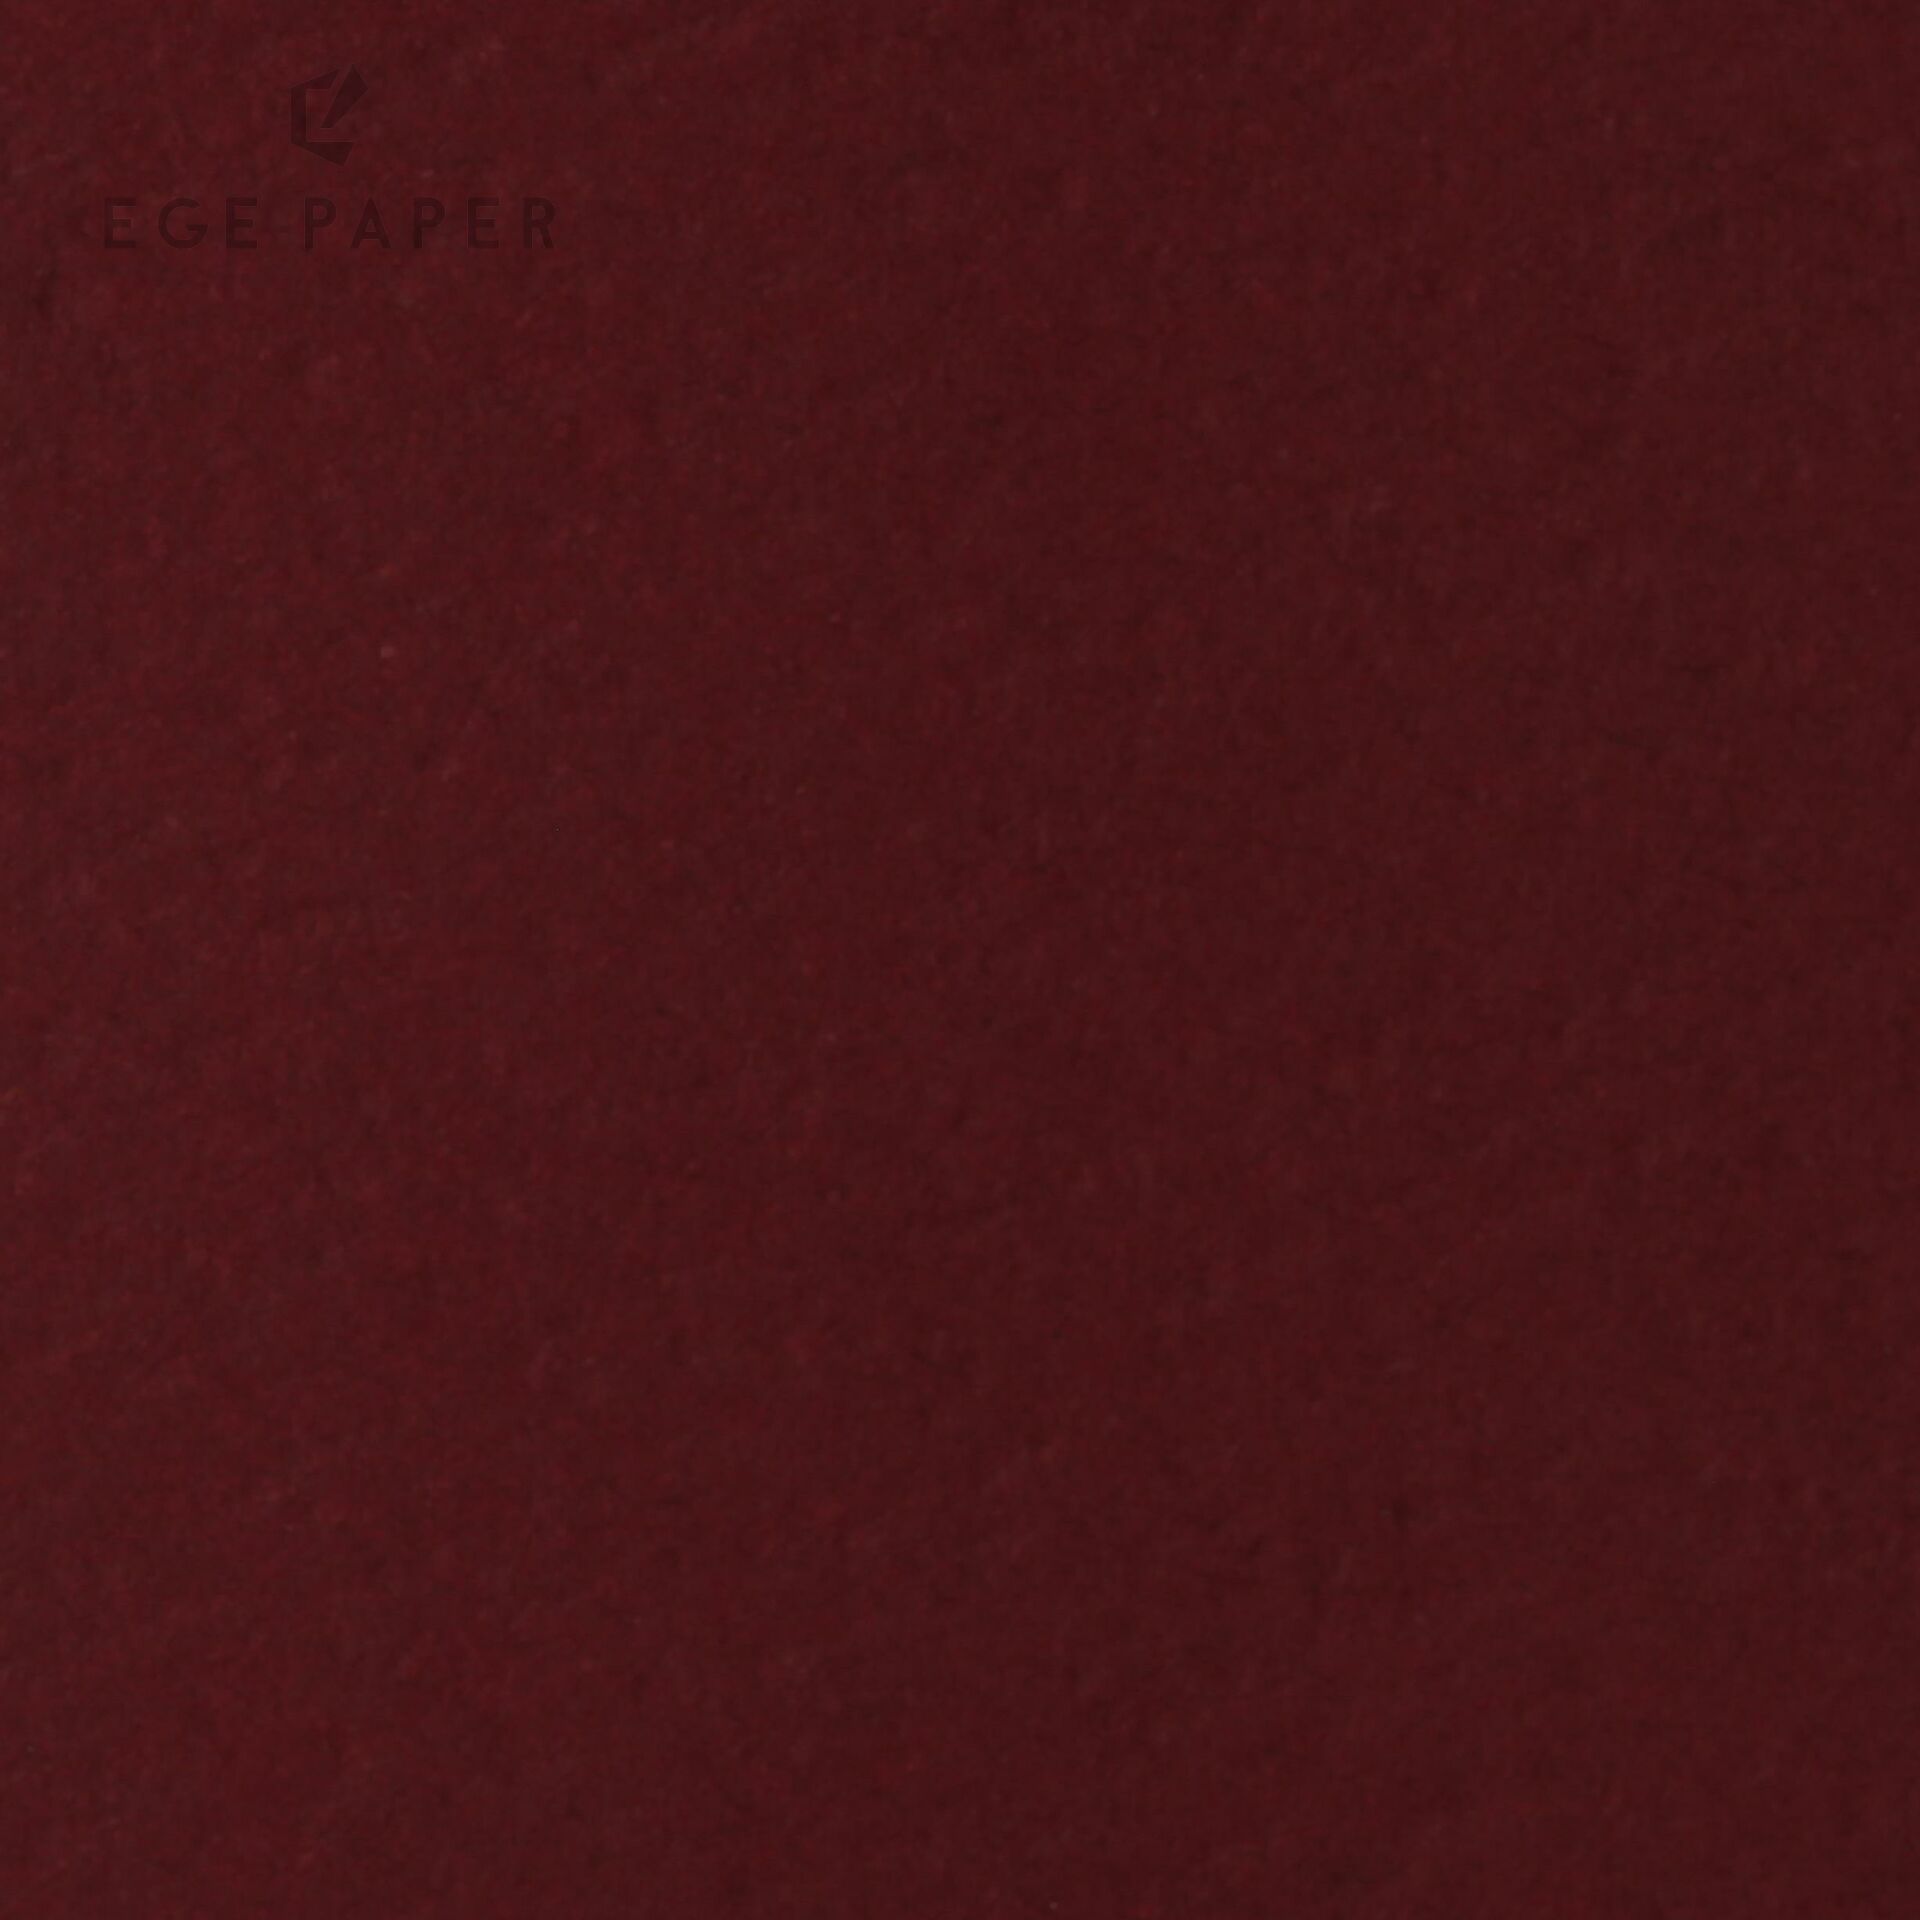 SIRIUS - CLARET RED (BURANO) - 120GR - 70X100CM